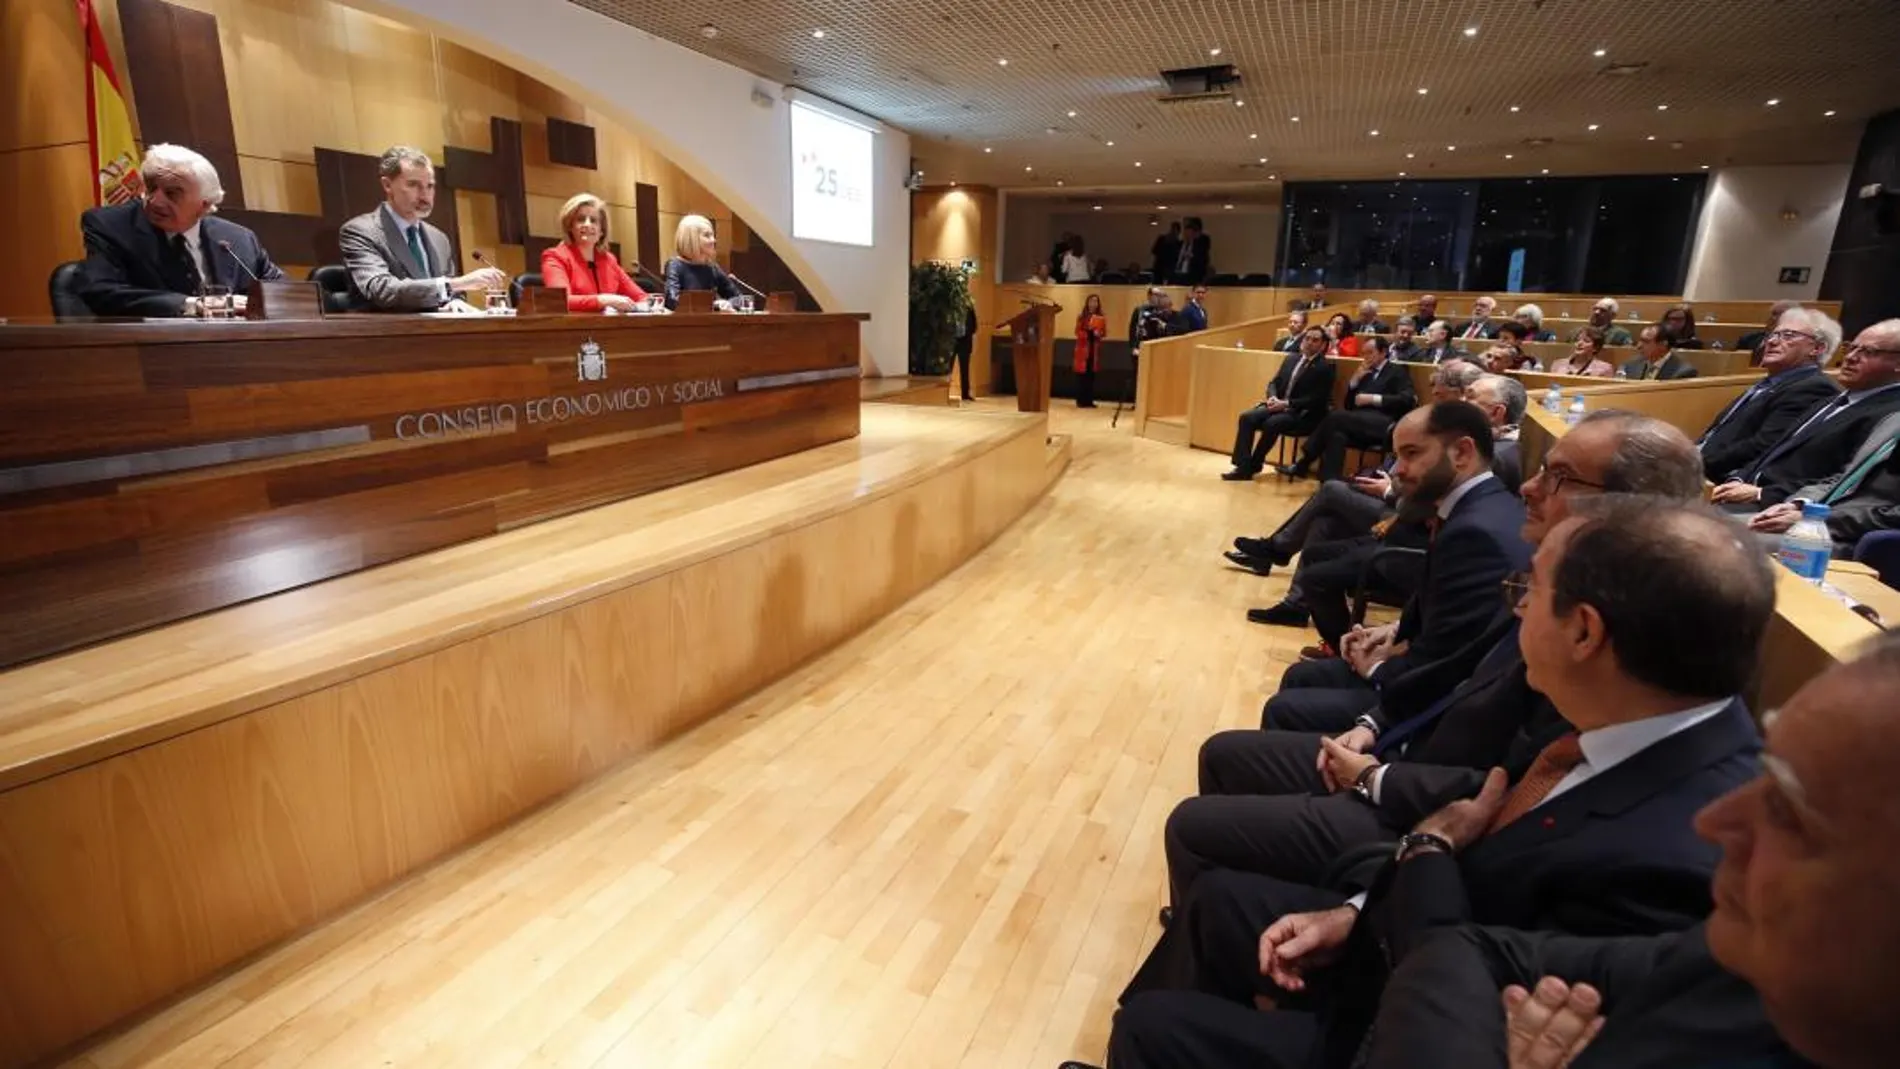 Felipe VI acompañado por la ministra de Empleo, Fátima Báñez, asiste al pleno extraordinario del Consejo Económico y Social /Efe